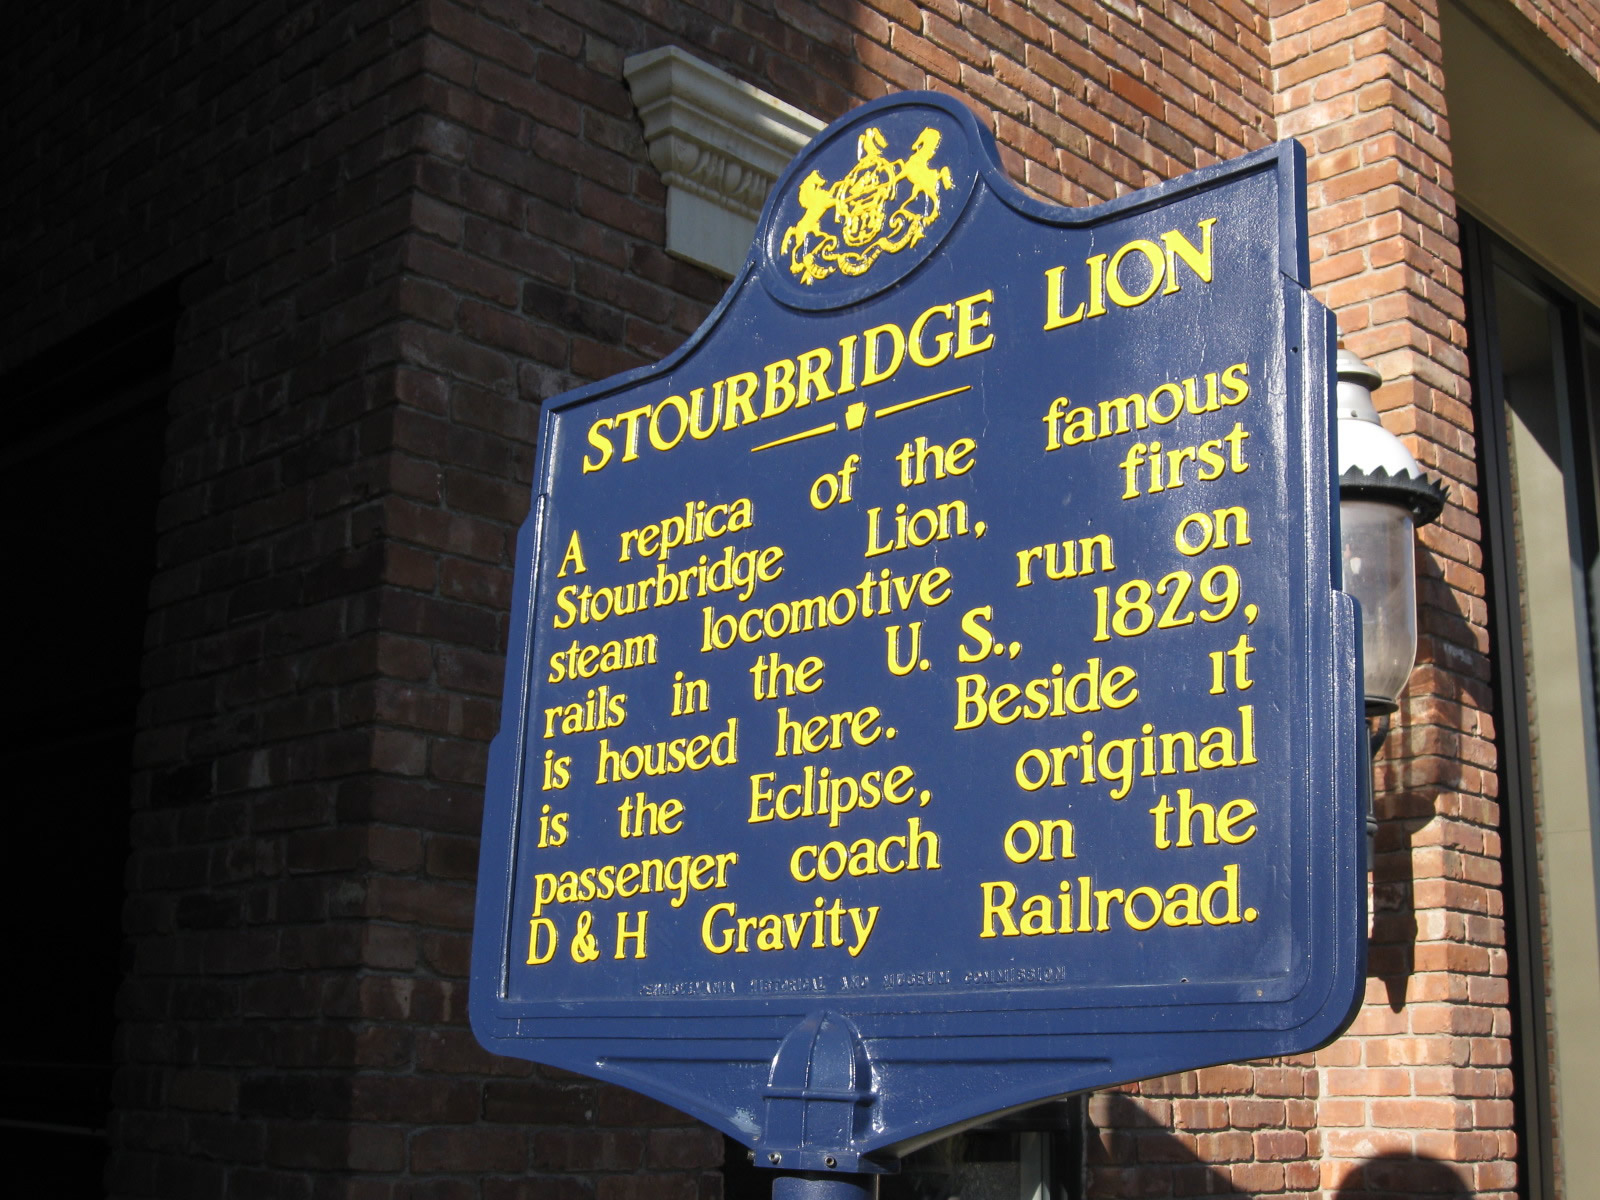 State Historical Marker for the Stourbridge Lion